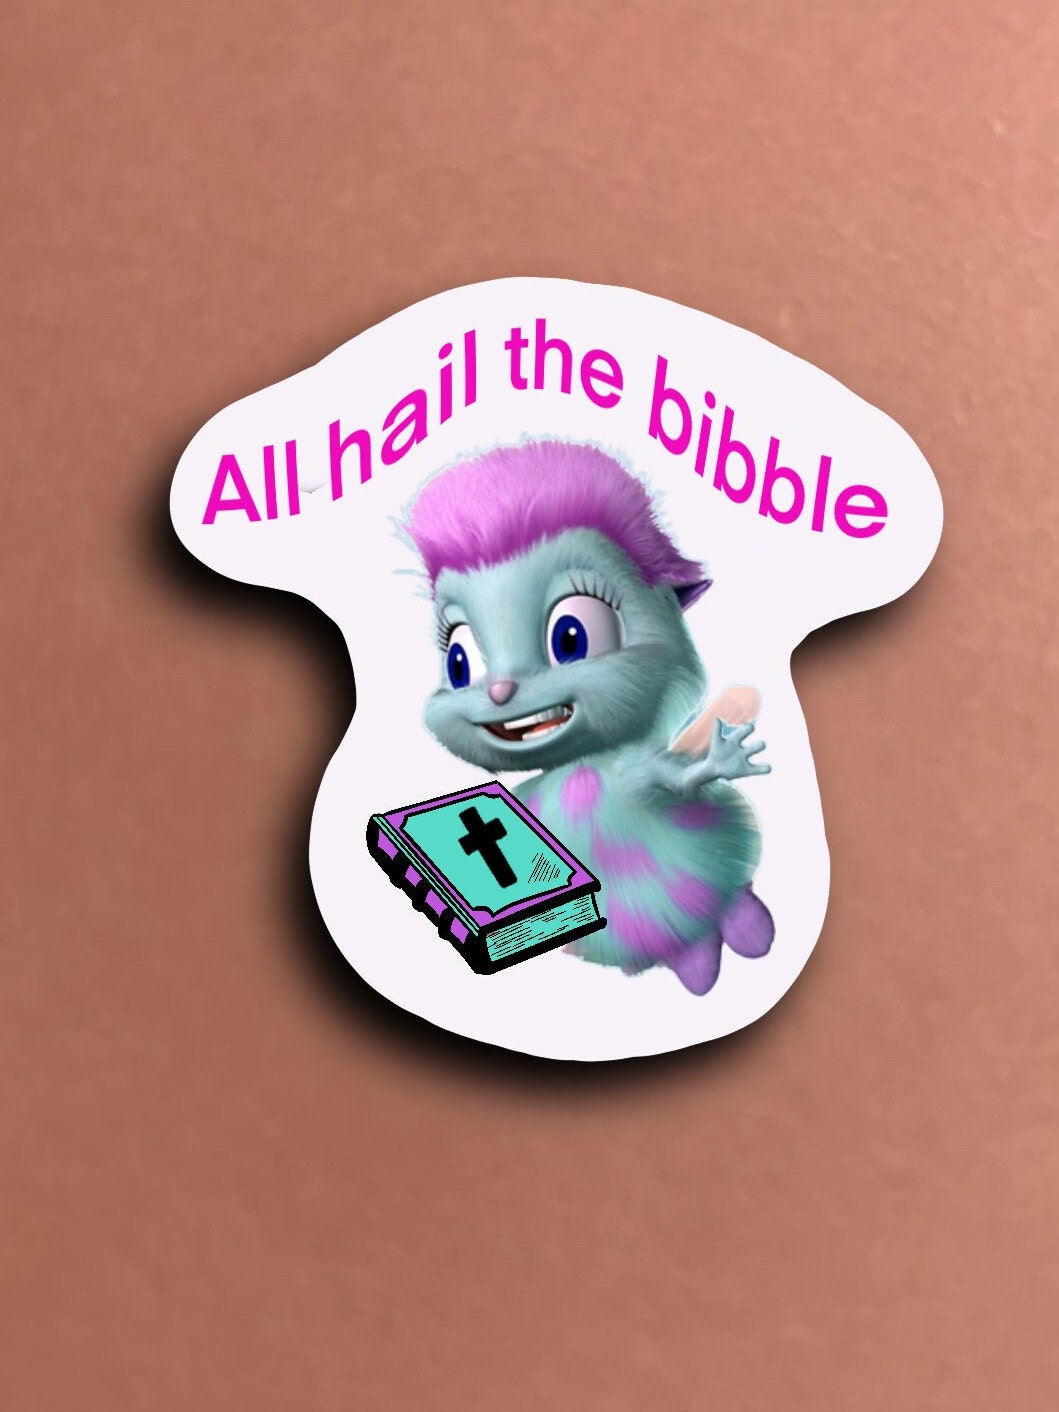 Bibble Fairytopia Sticker for Sale by milkyplanet